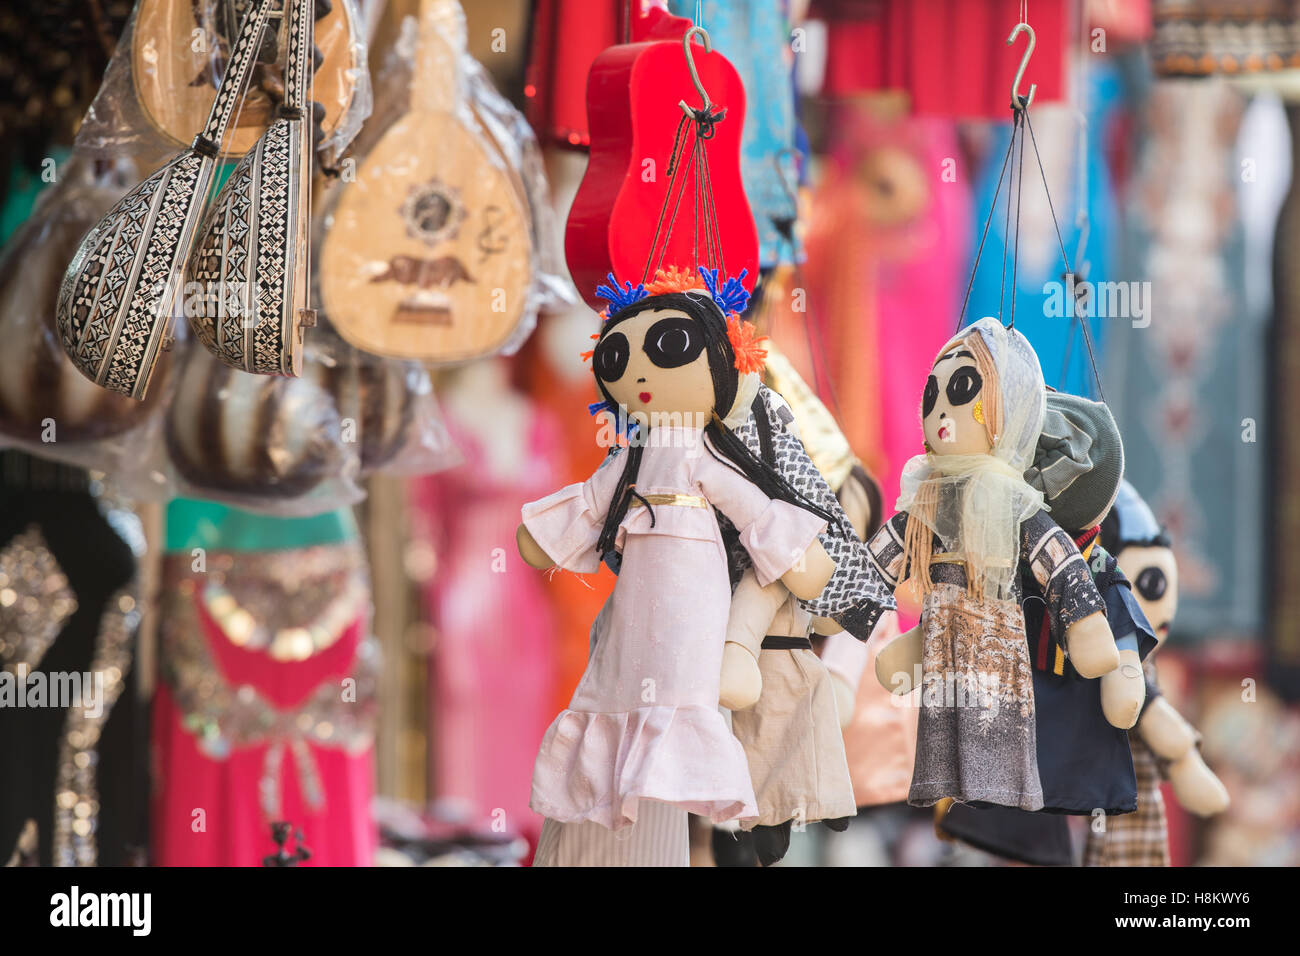 El Cairo, Egipto. Cerca de muñecas artesanales, instrumentos musicales (5 cuerdas de oud) y otros souvenirs en venta en una tienda en la Foto de stock